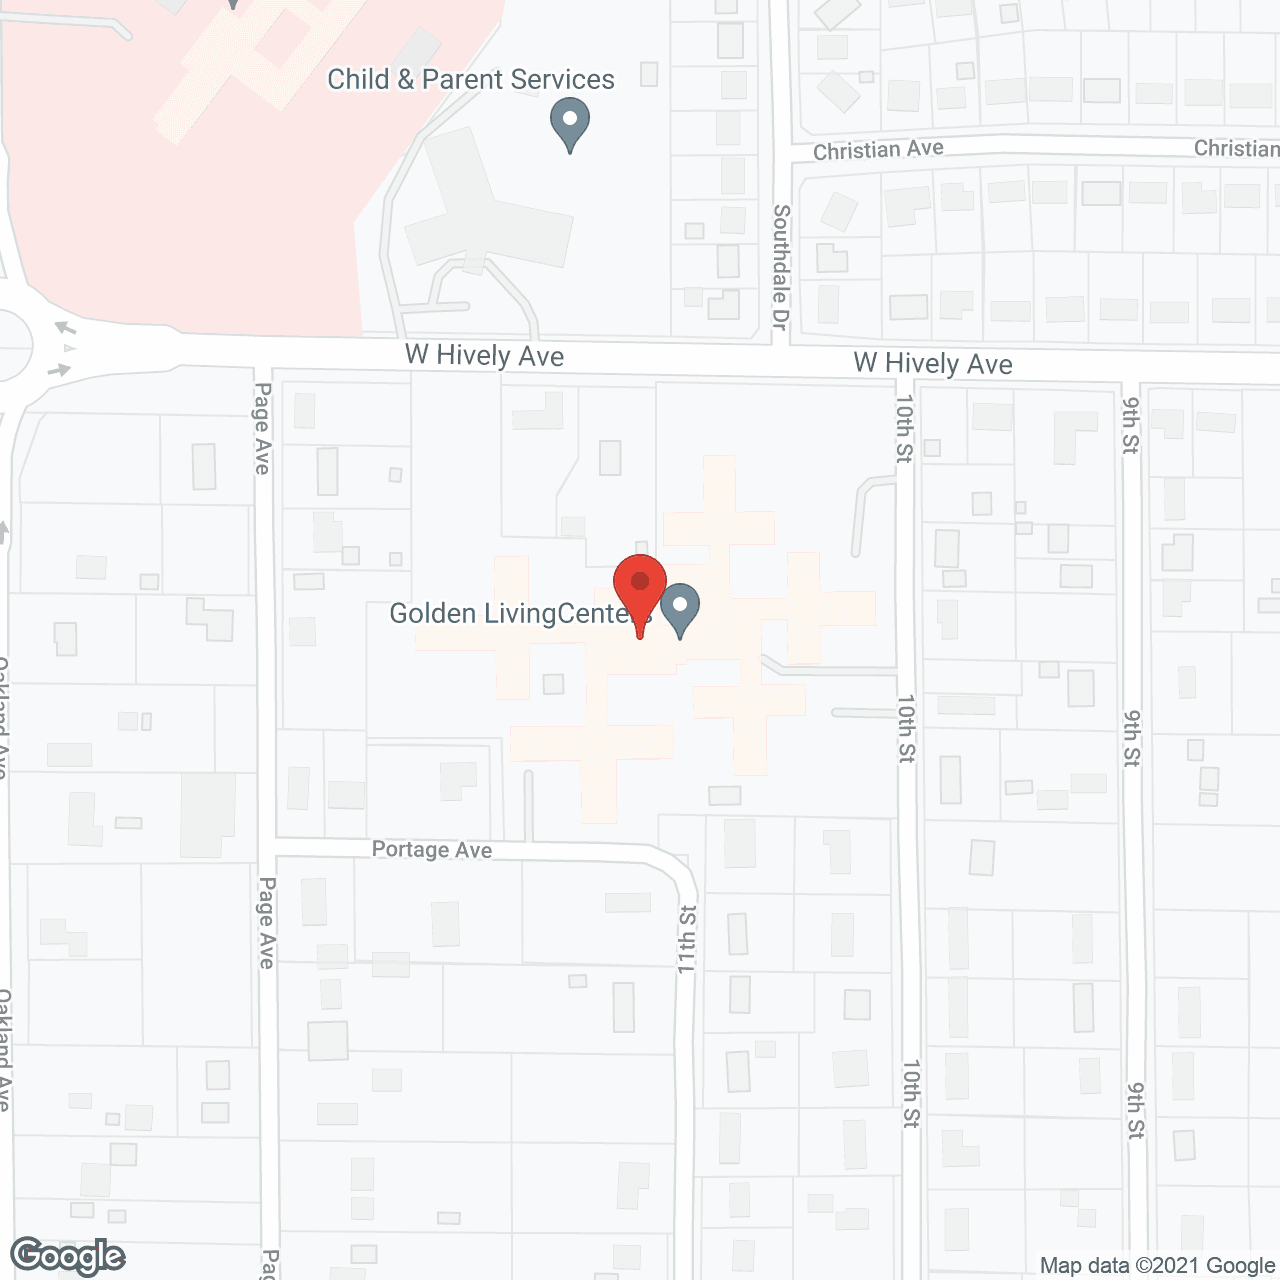 Elkhart Care Center in google map